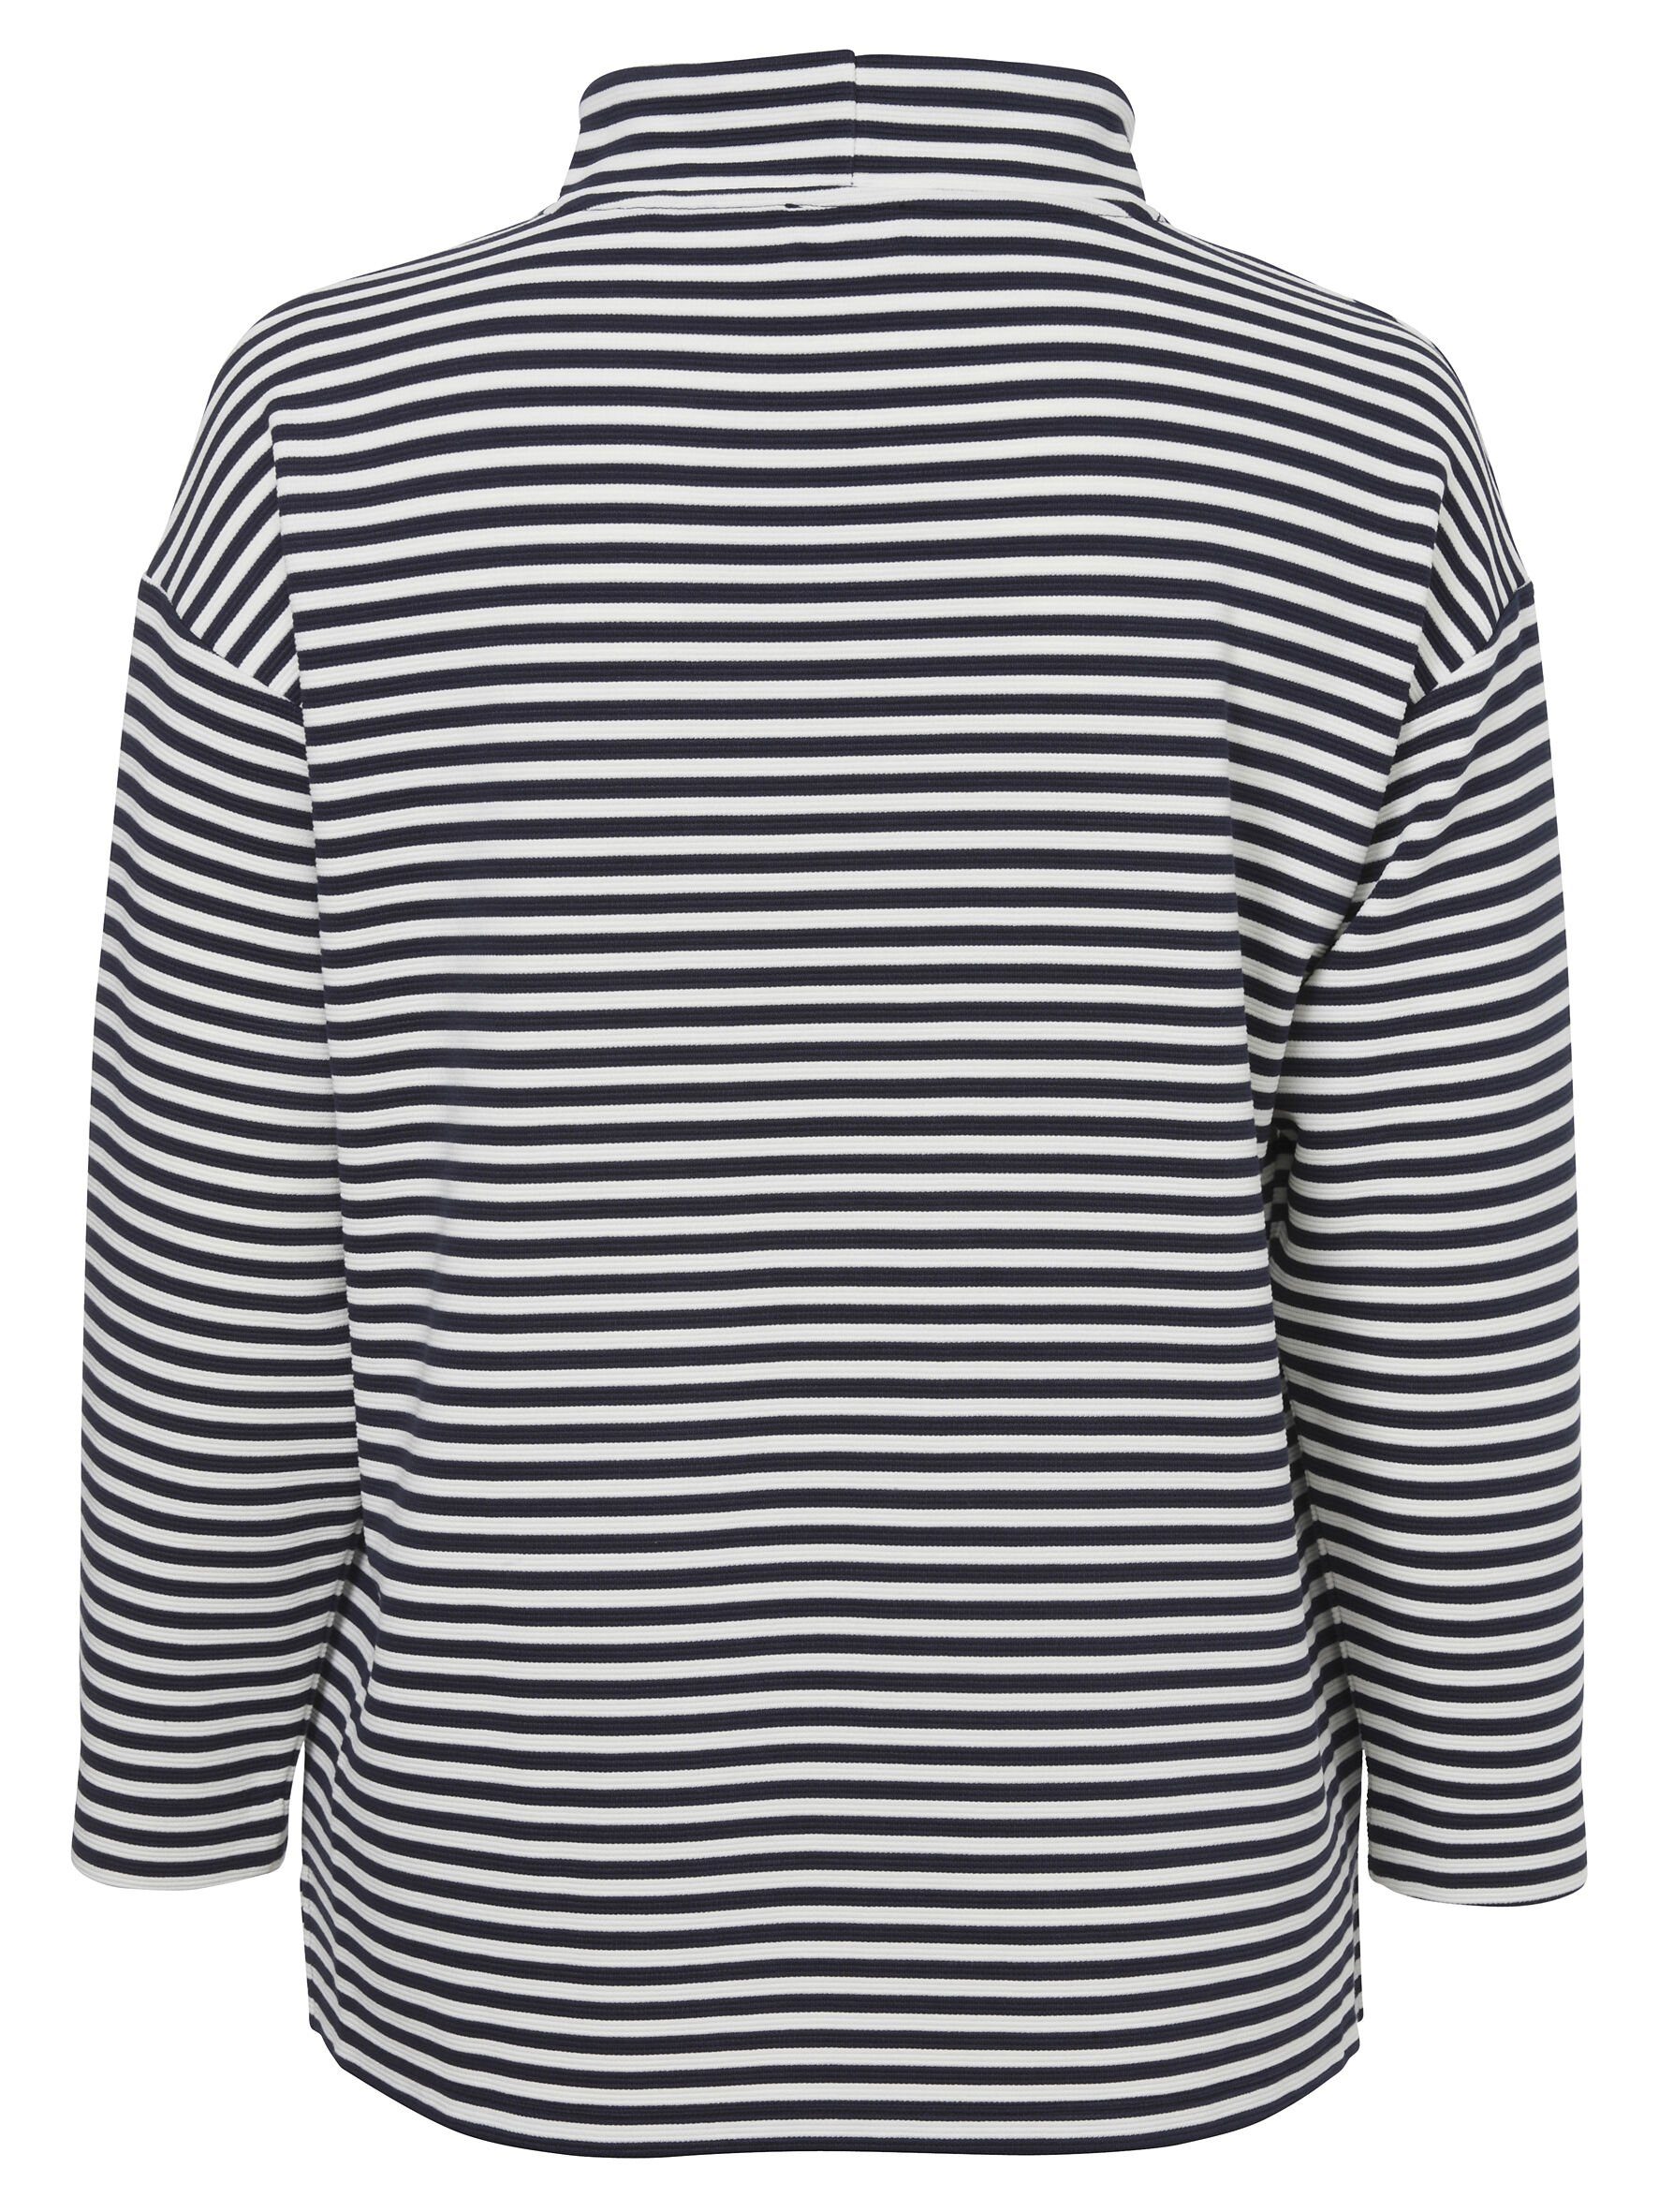 VIA APPIA Sweatshirt mit Allover-Muster Sportives DUE Sweatshirt überschnittenen Gestreiften Schultern mit